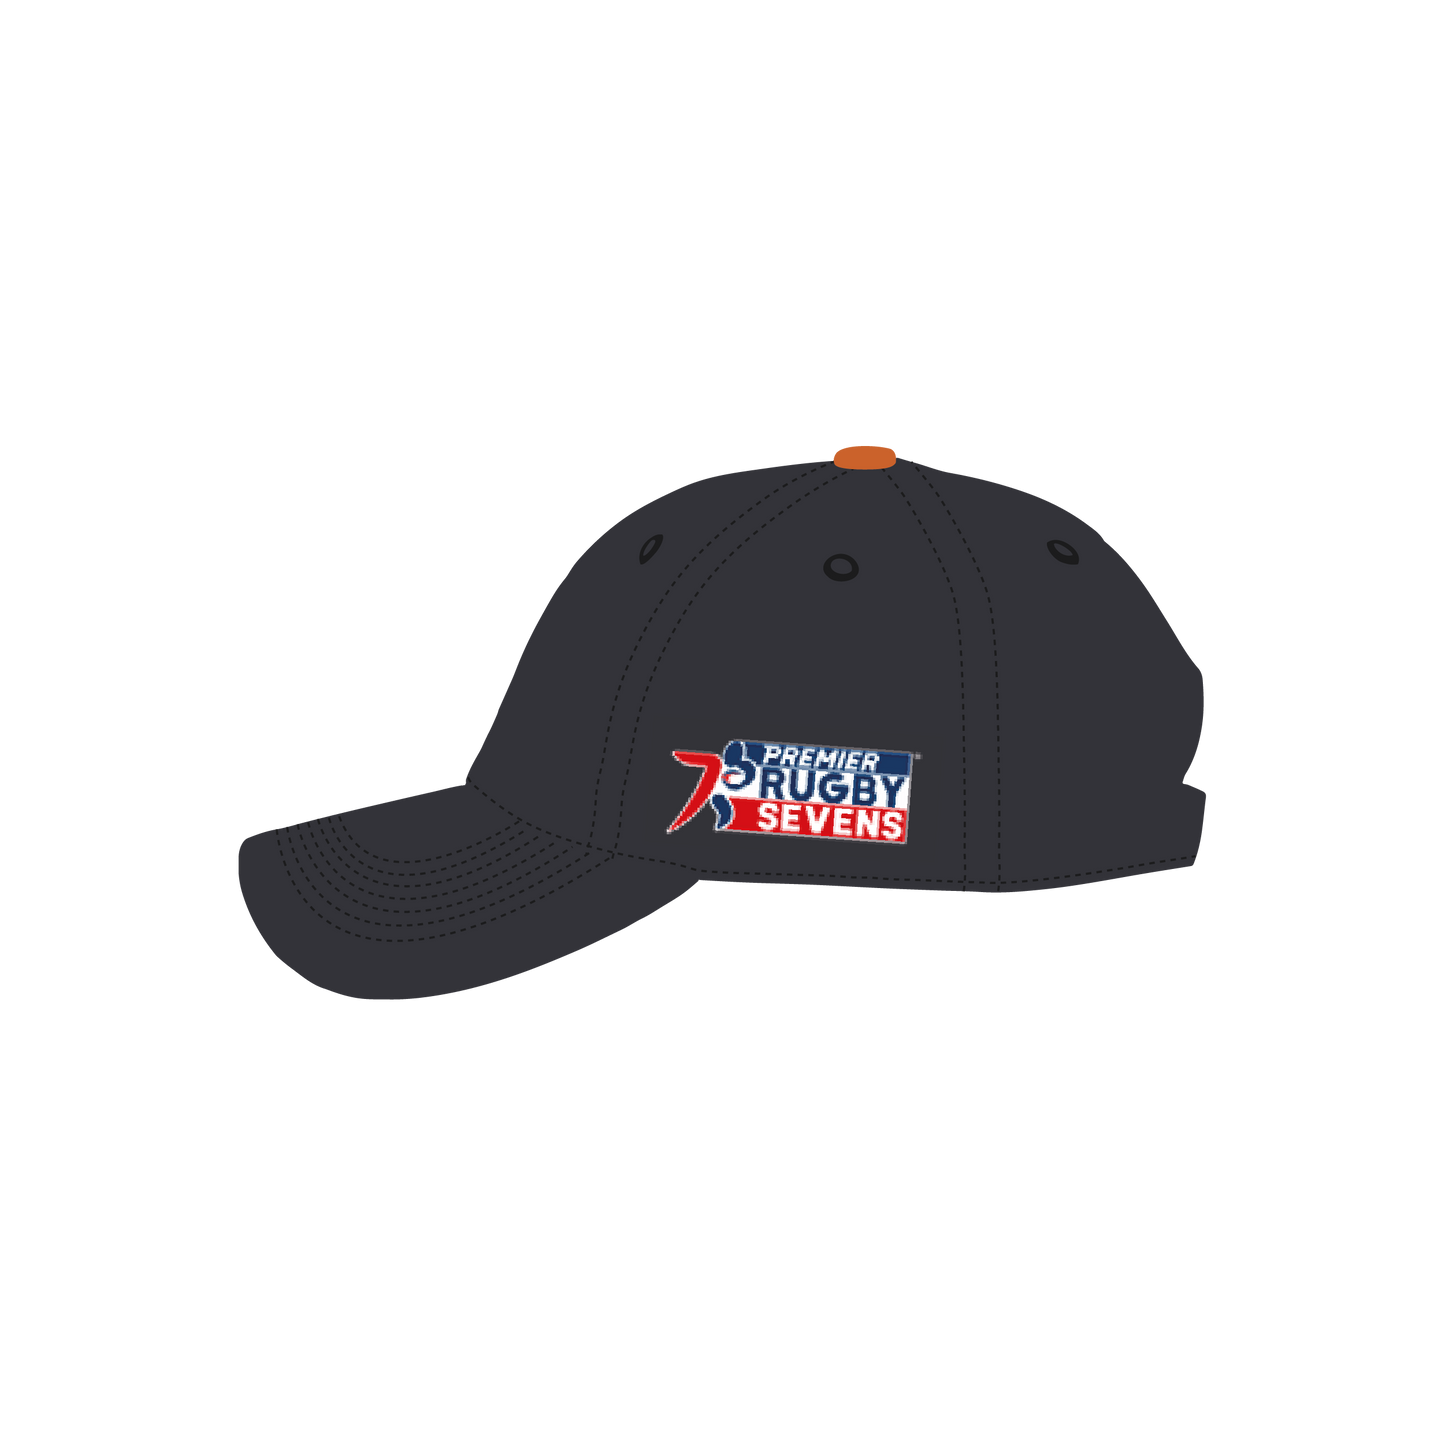 Texas Team - Team logo hat